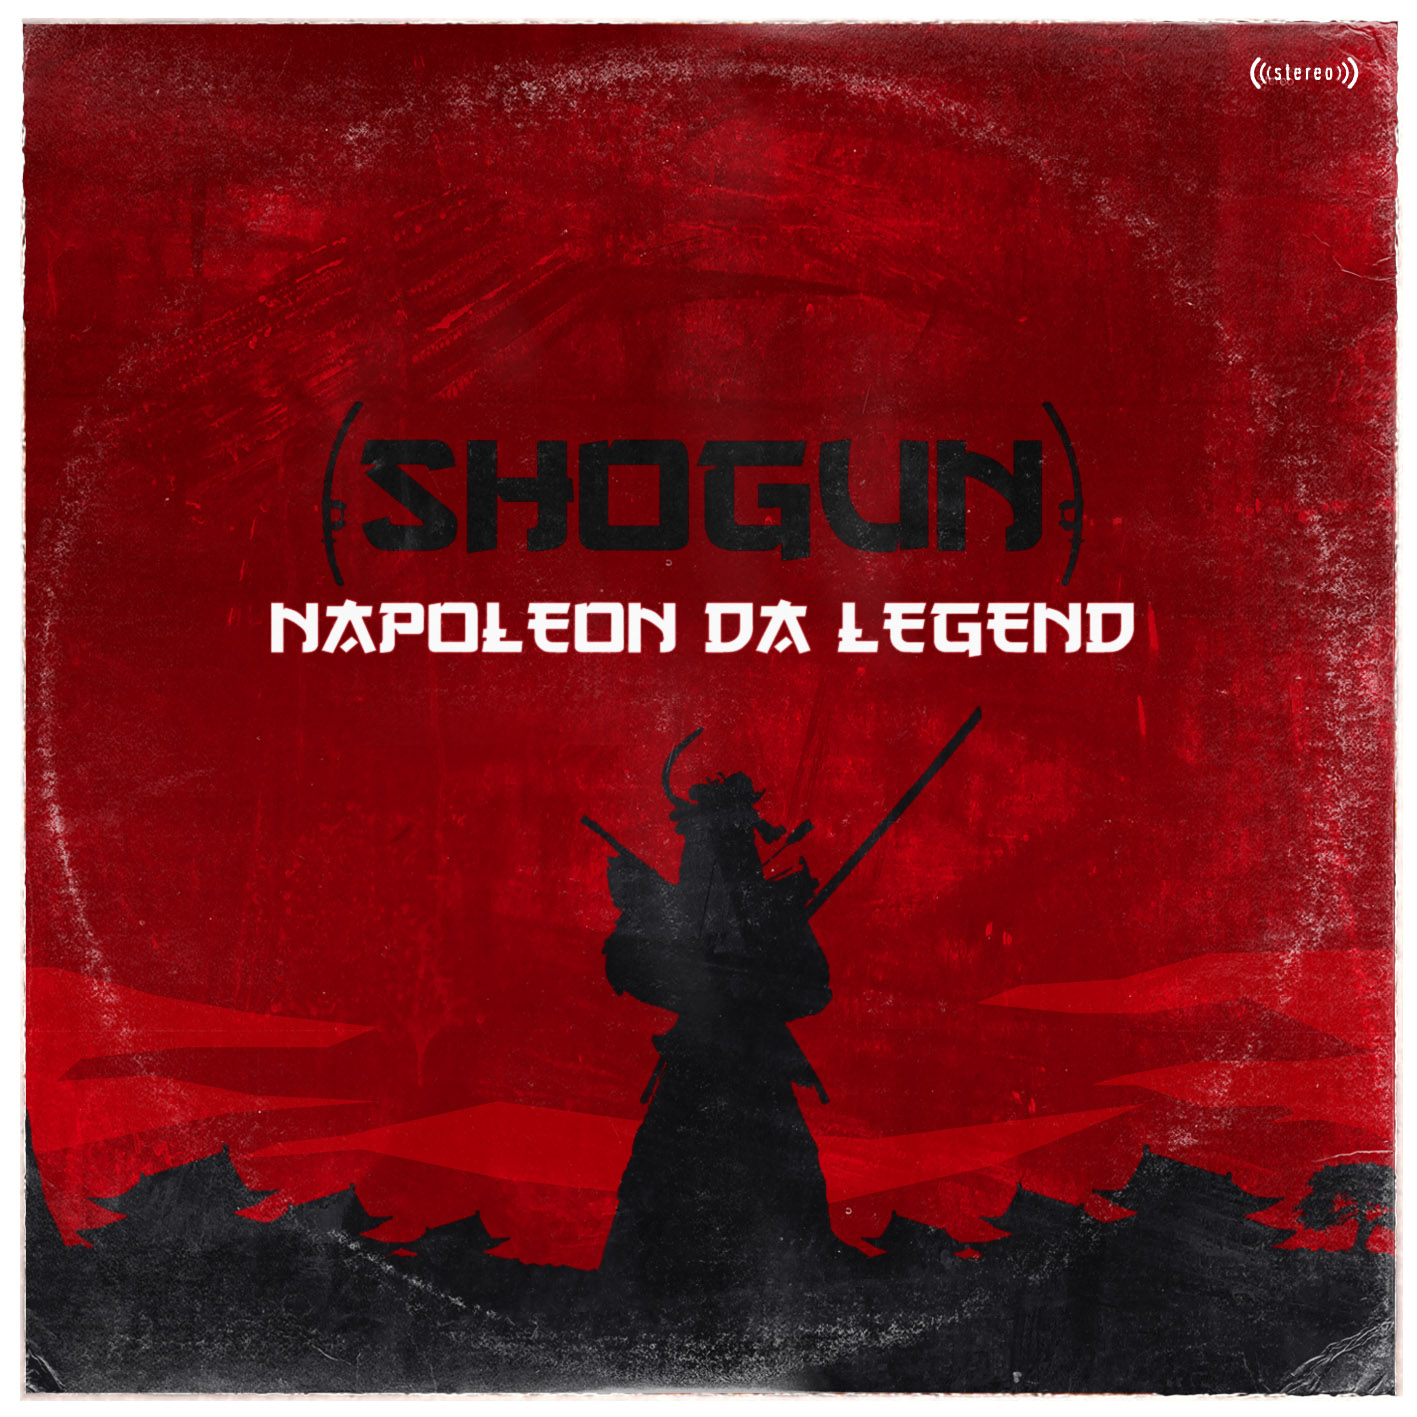 Shogun обложка альбома. Легенда о Наполеоне. Legend Music. Legend песня. Legend саундтрек